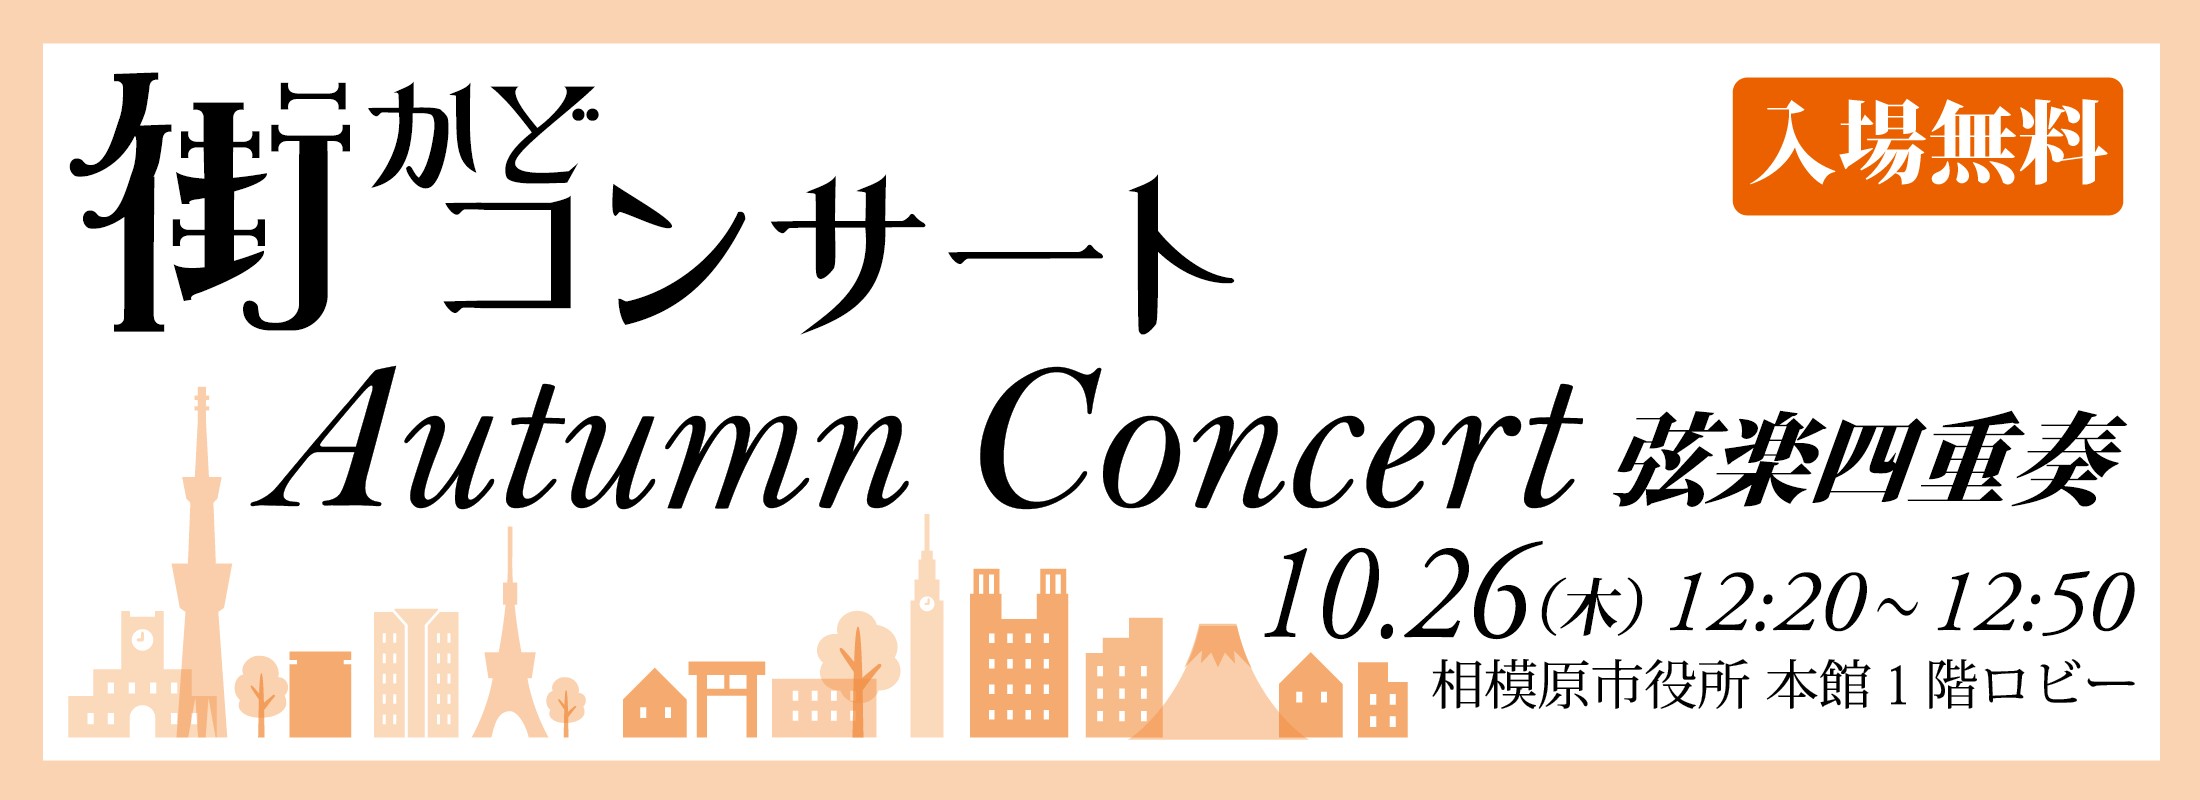 街かどコンサート AutumnConcert width=